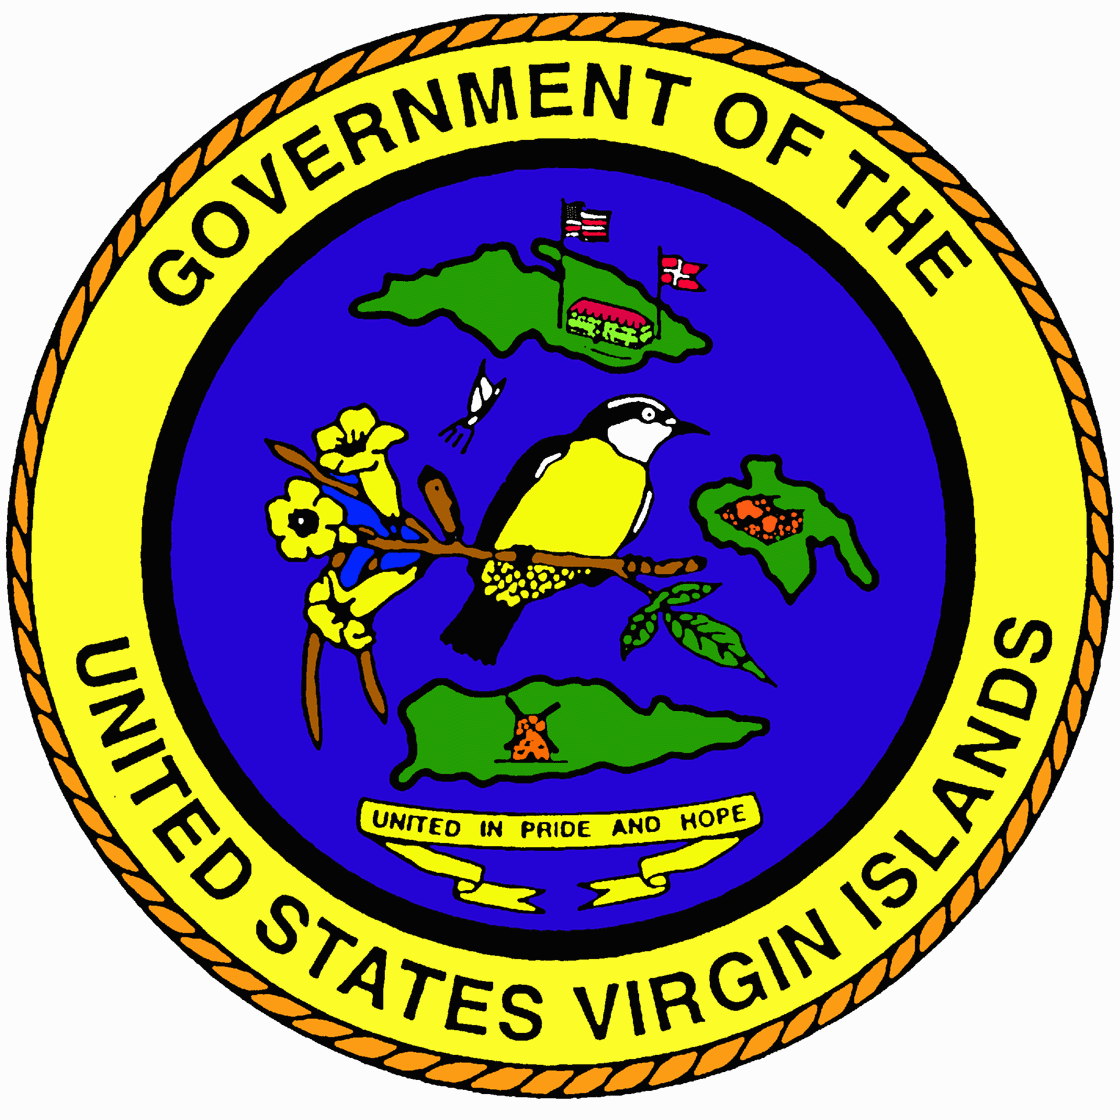 United States Virgin Islands Emblem